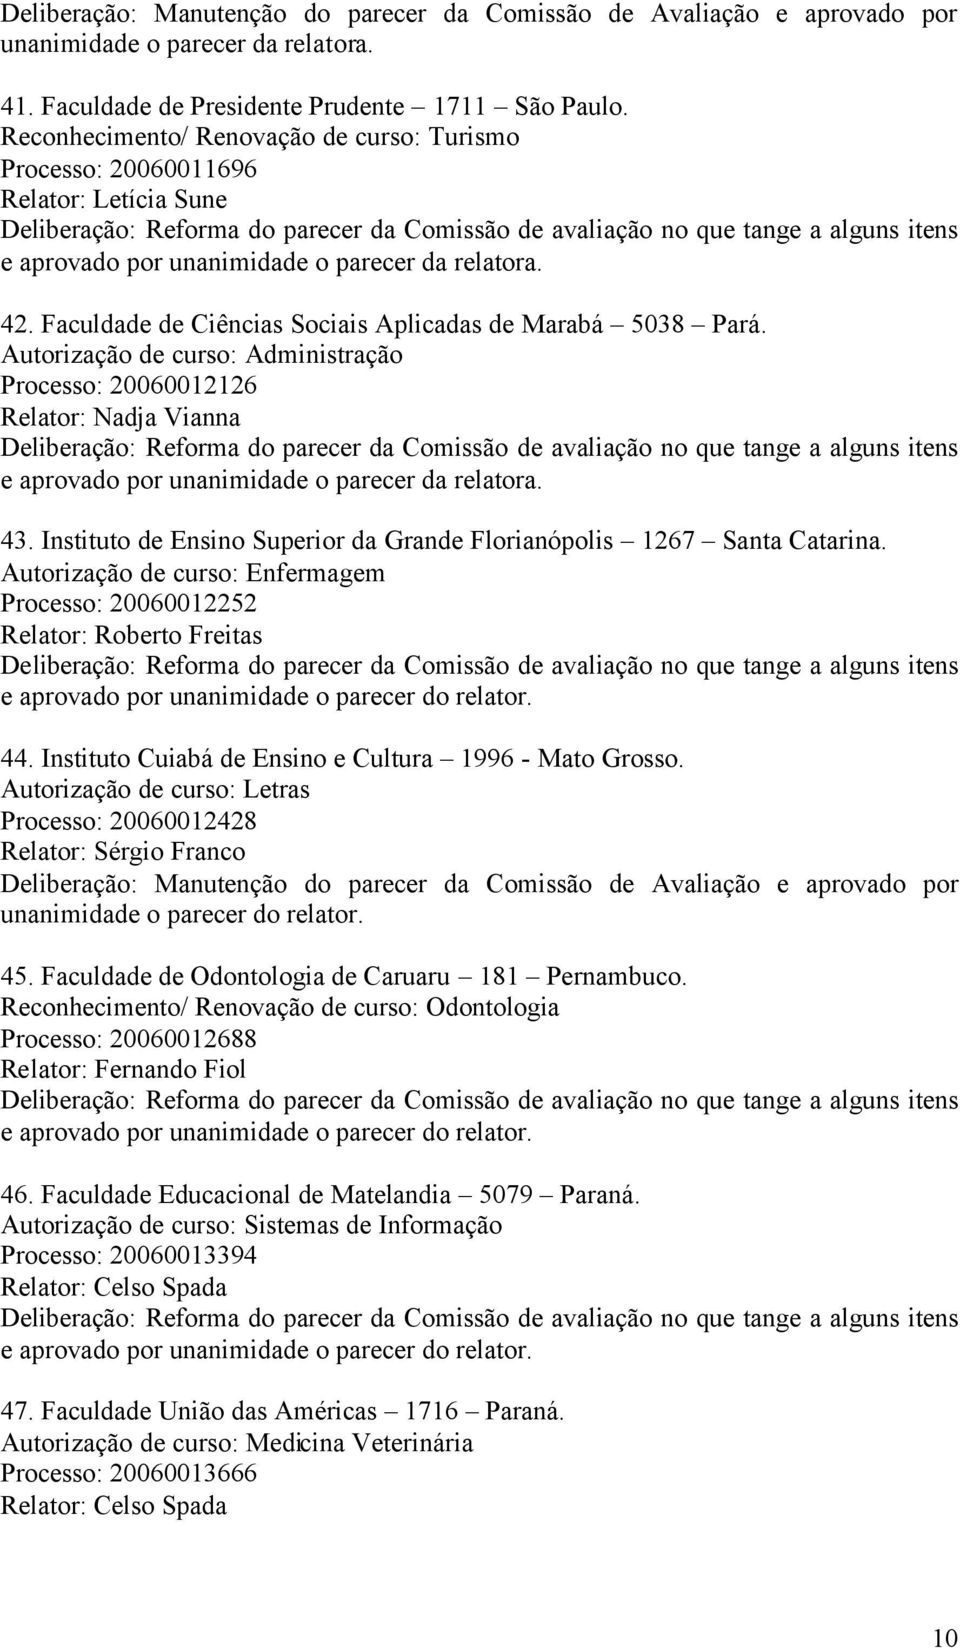 Instituto de Ensino Superior da Grande Florianópolis 1267 Santa Catarina. Autorização de curso: Enfermagem Processo: 20060012252 Relator: Roberto Freitas e aprovado por 44.